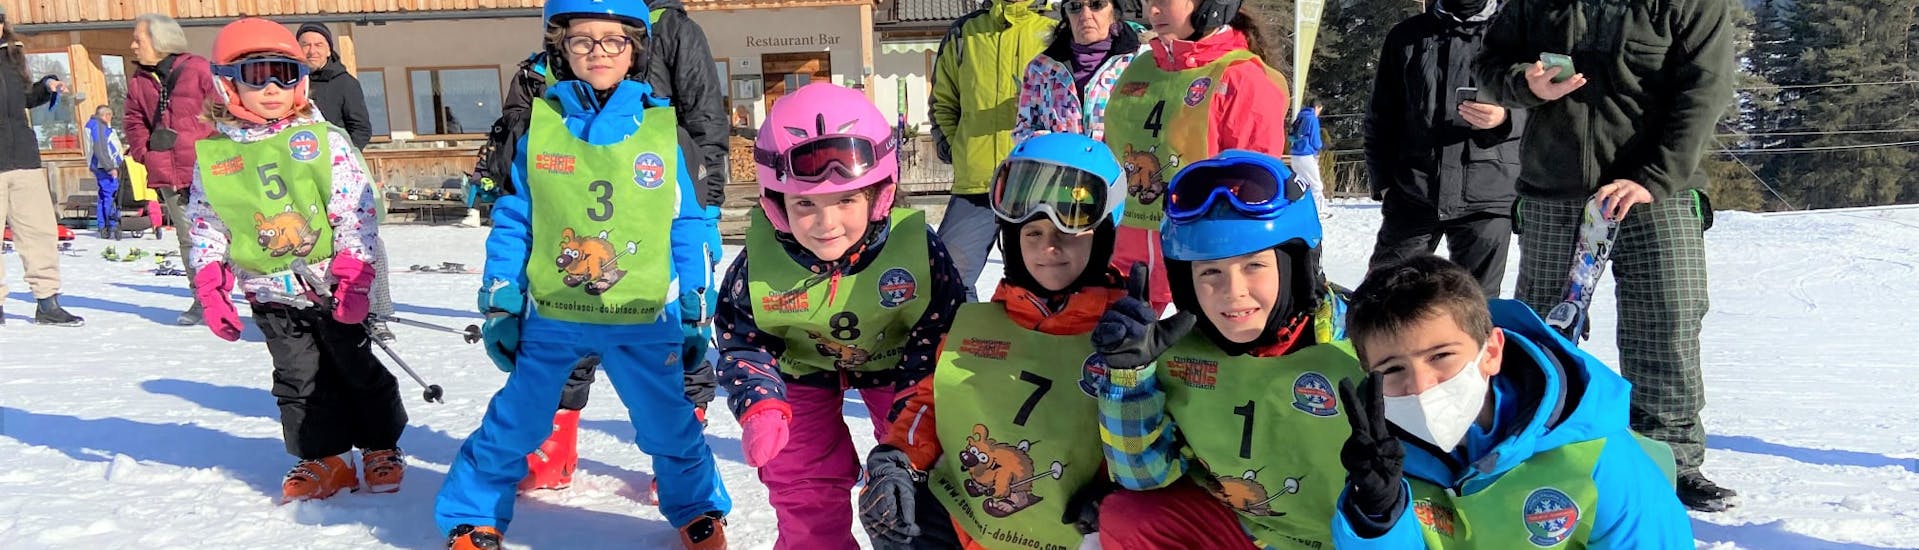 Clases de esquí para niños a partir de 7 años para todos los niveles.